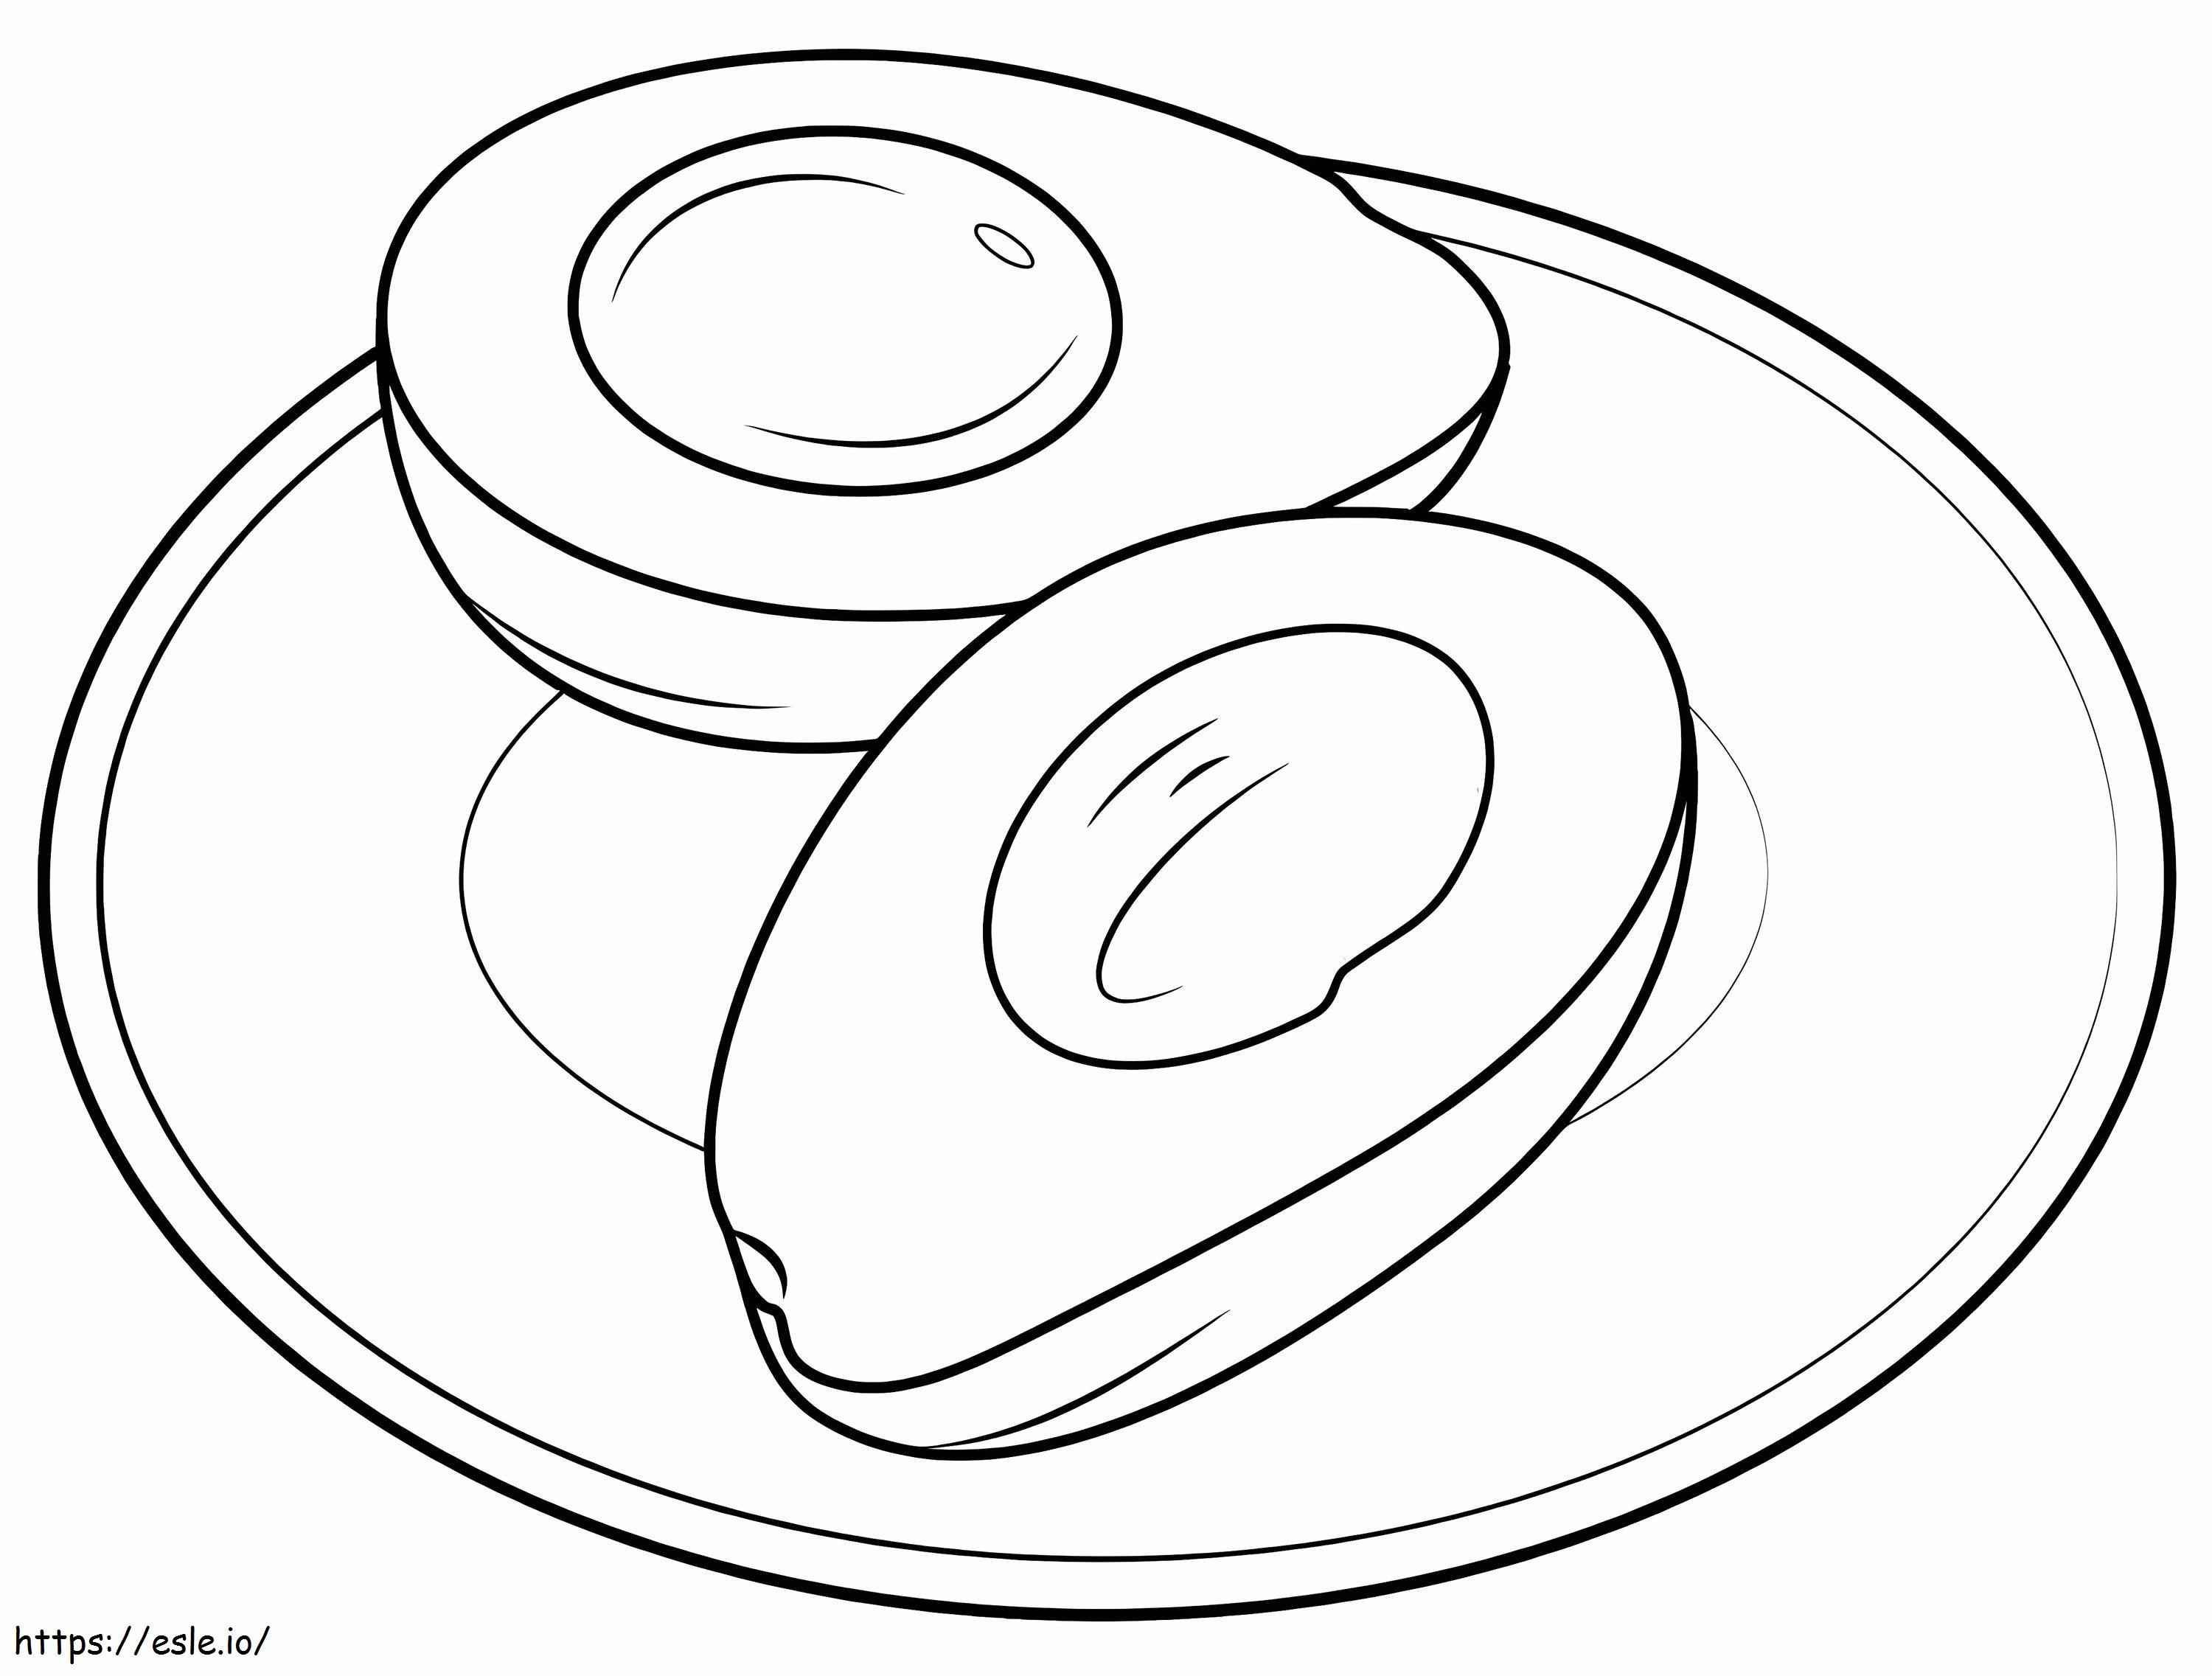 Coloriage Avocat sur une assiette à imprimer dessin